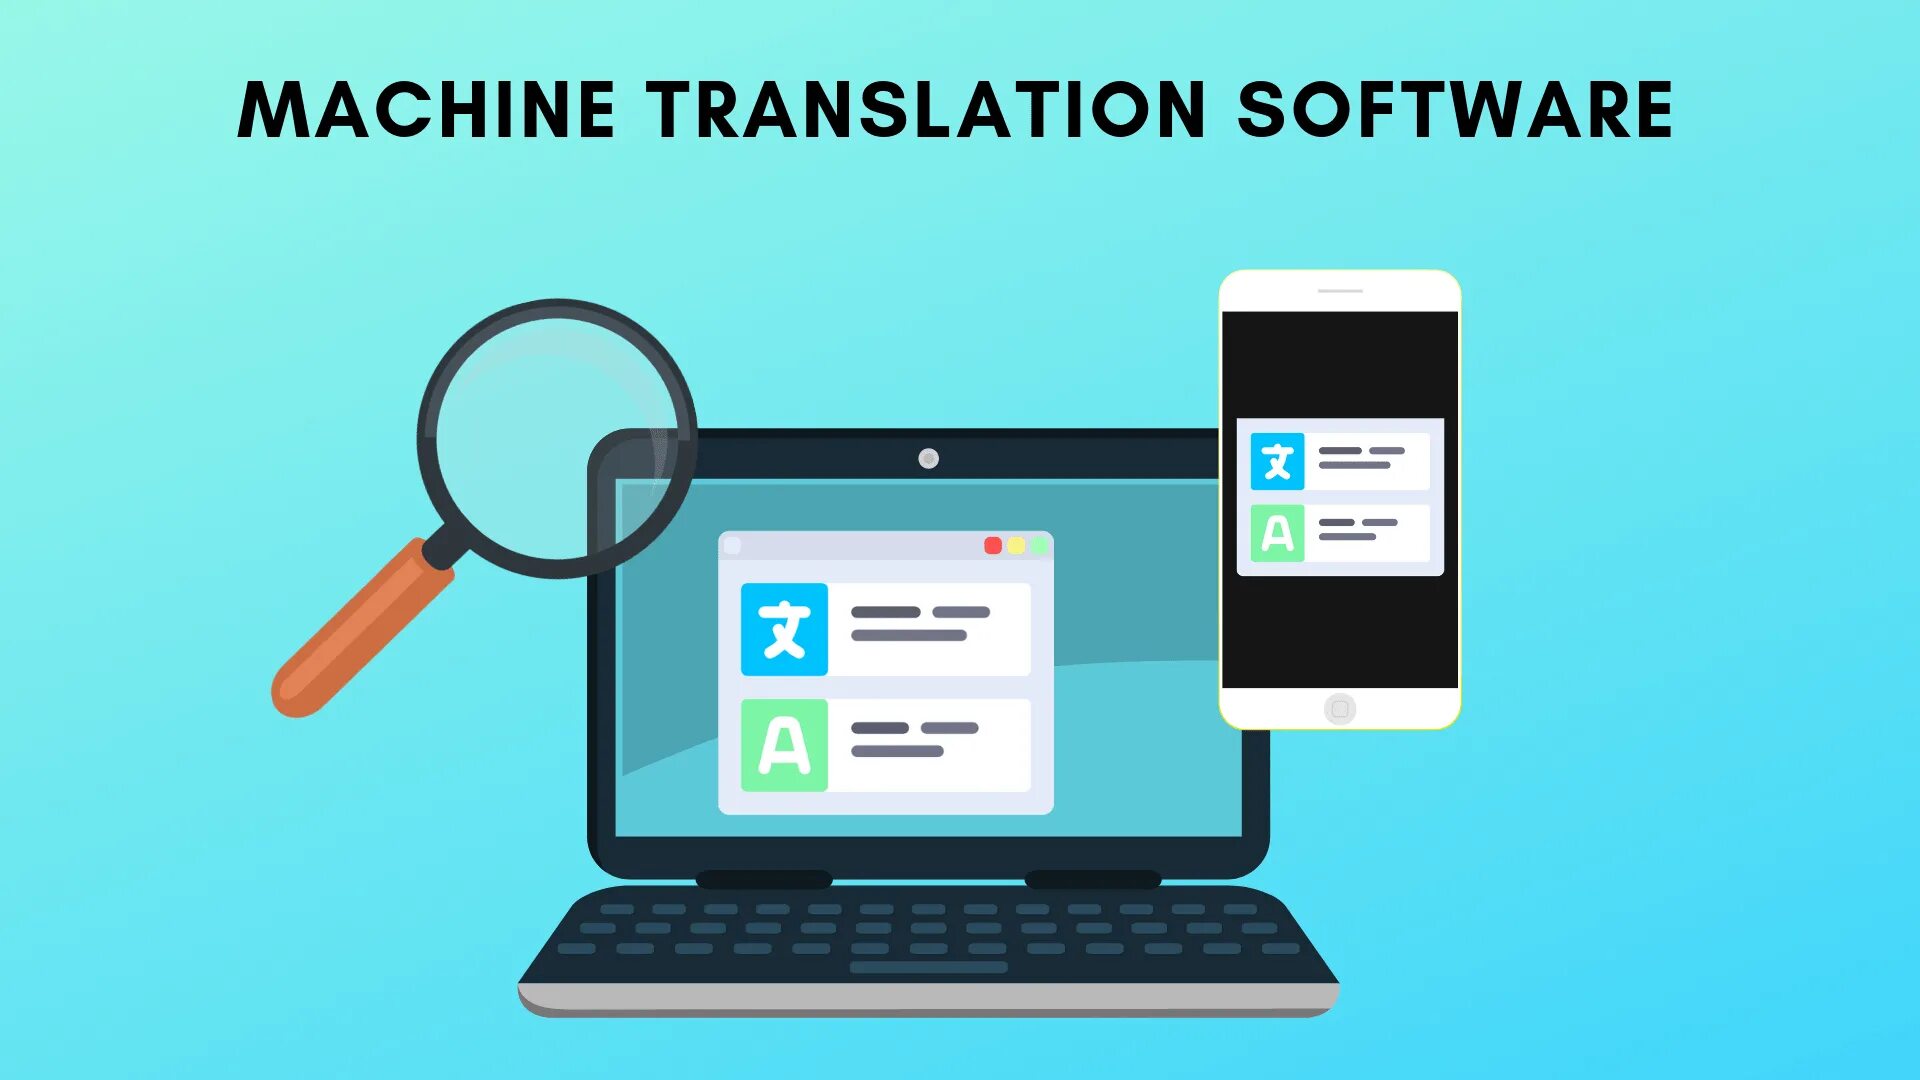 Machinery перевод. Машинный перевод. Машинные переводчики. Системы машинного перевода. Программы машинного перевода.